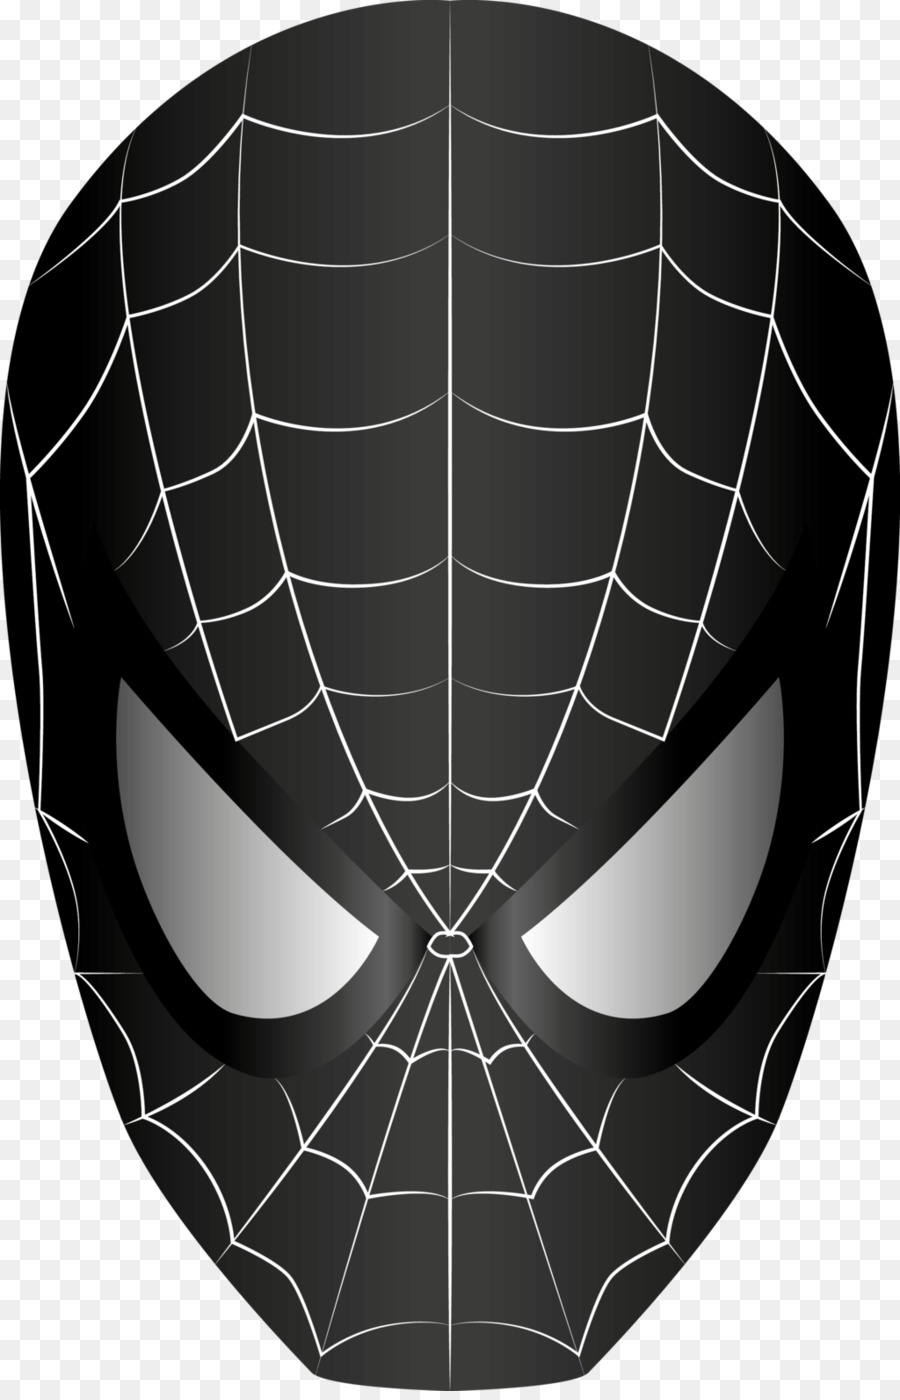 Spider-Man: Back in Black DeviantArt Vector graphics - spiderman png download - 1024*1583 - Free Transparent Spiderman png Download.